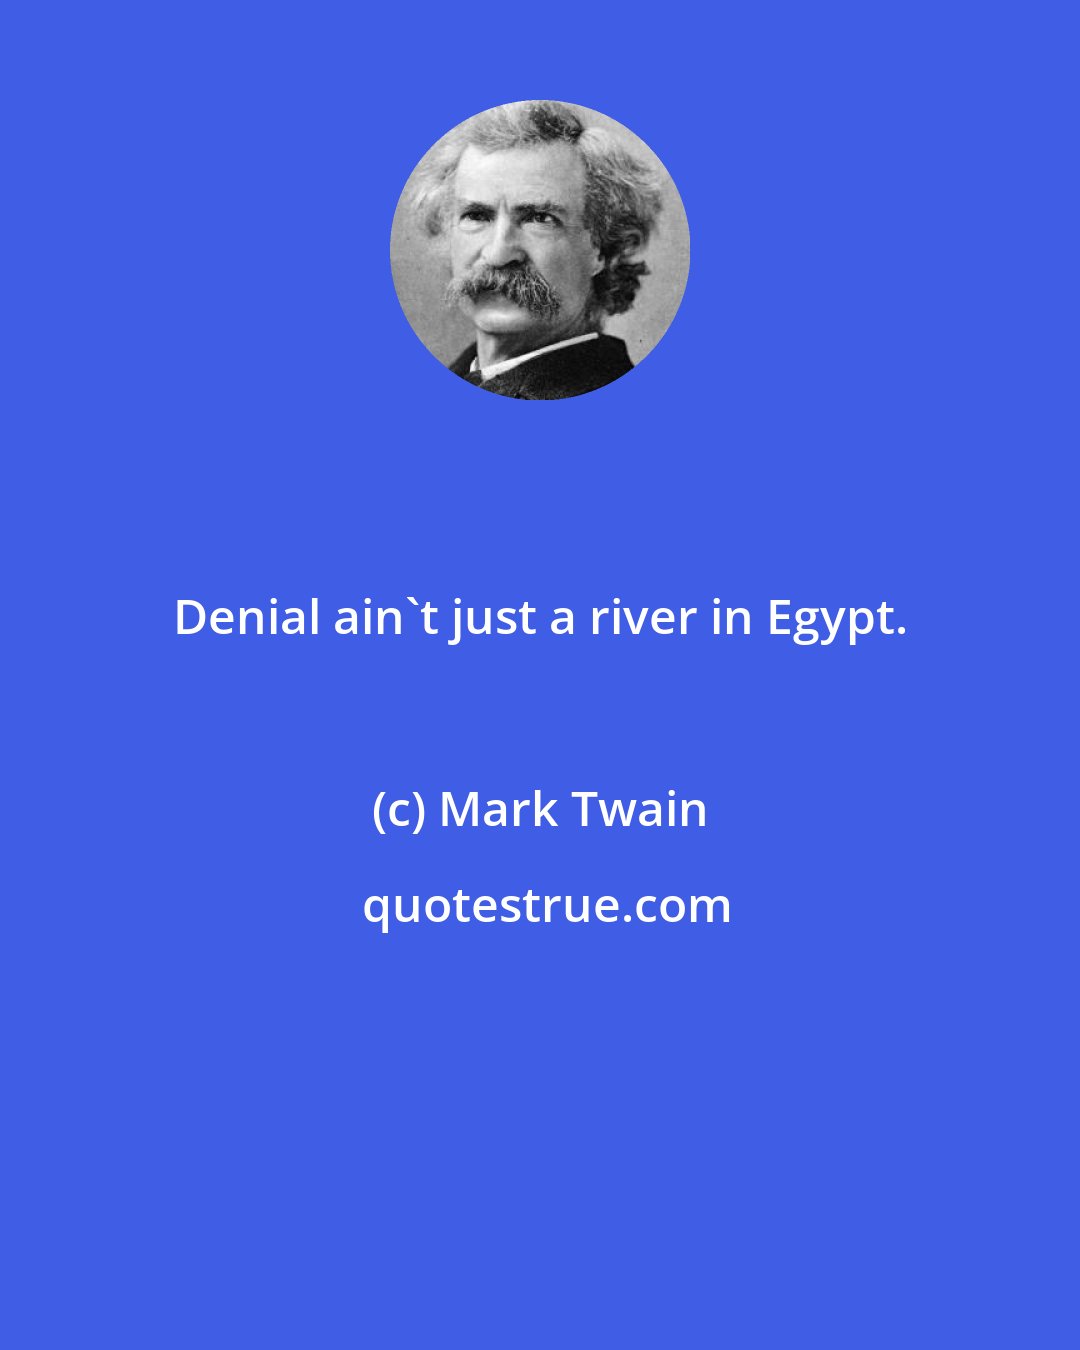 Mark Twain: Denial ain't just a river in Egypt.